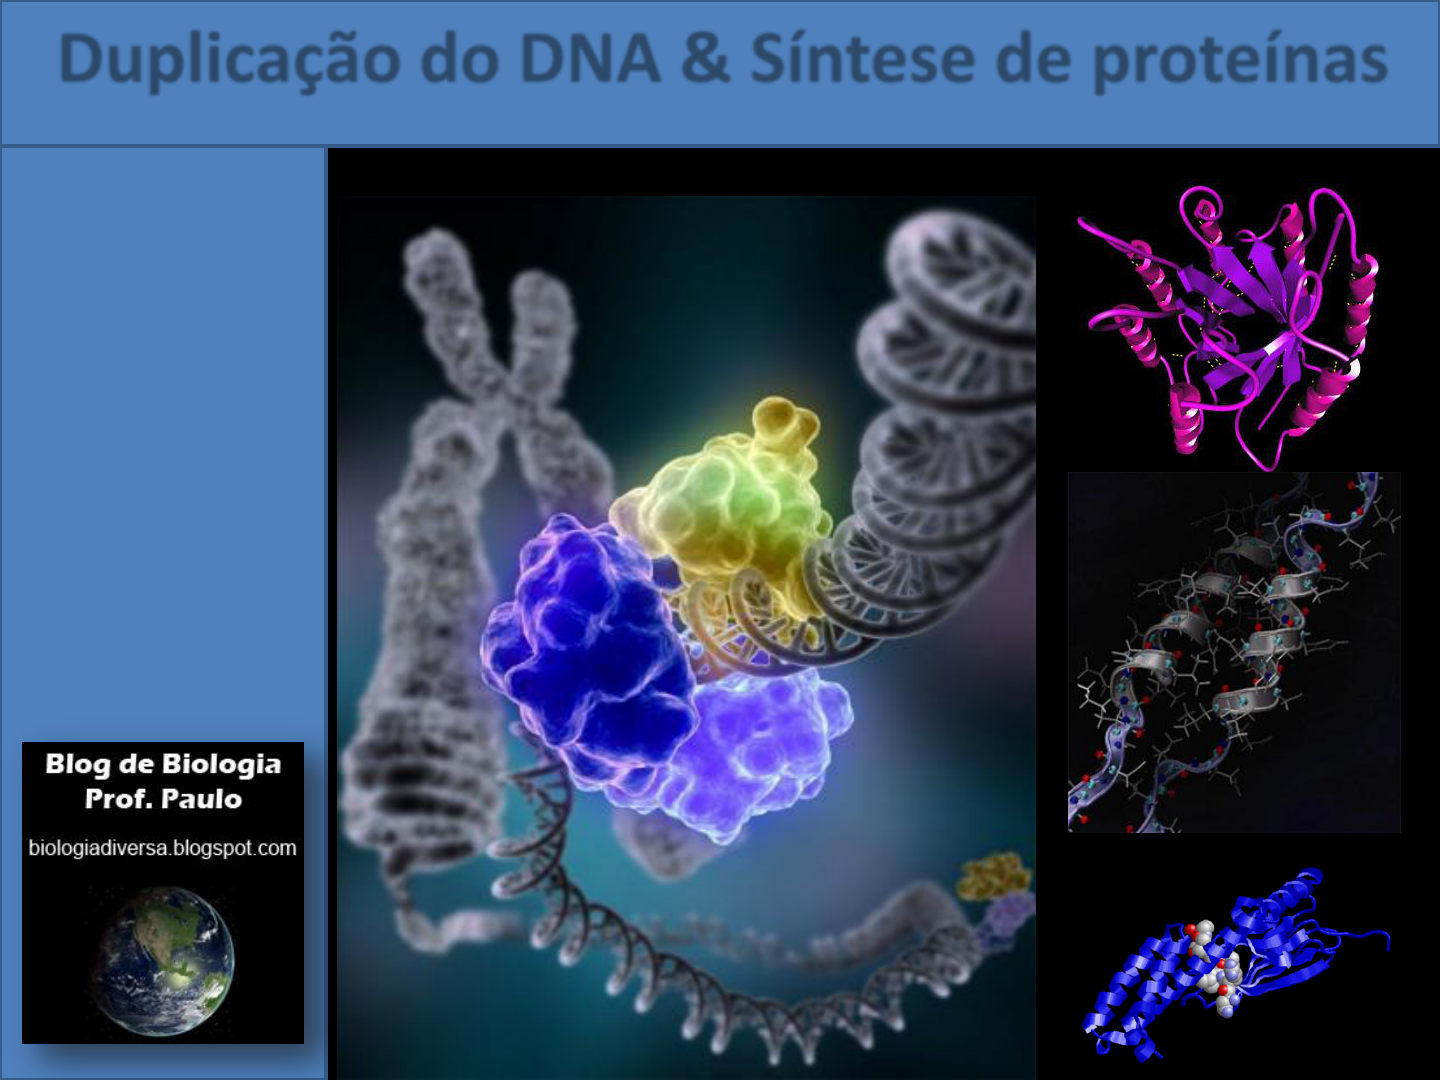 PPT - Estrutura do DNA Transcrição e Tradução PowerPoint Presentation -  ID:4104310